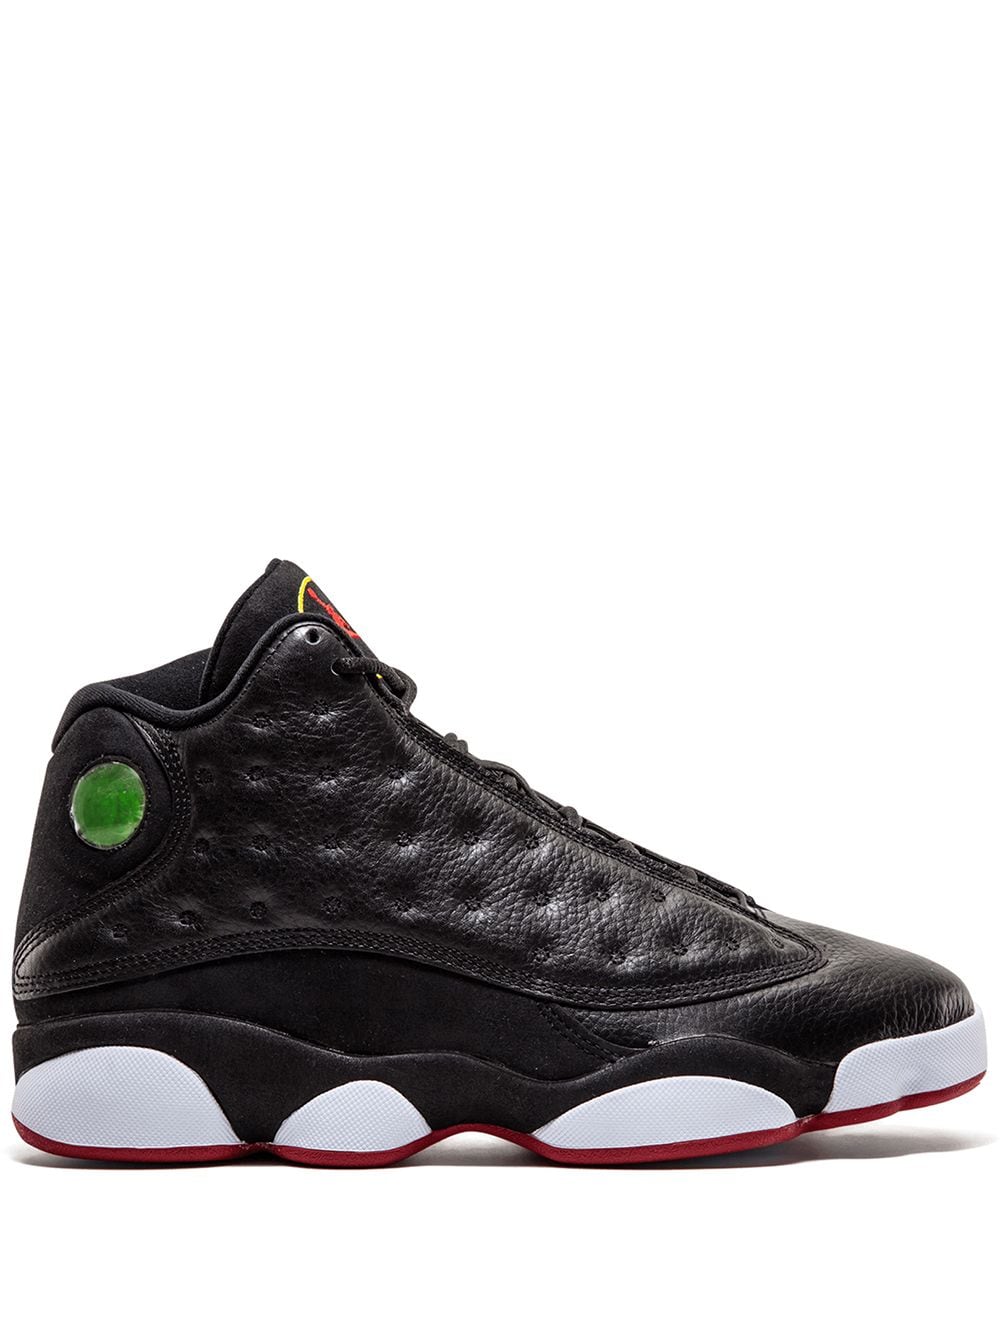 Jordan Air Jordan 13 Retro "2011 Playoffs" sneakers - Black